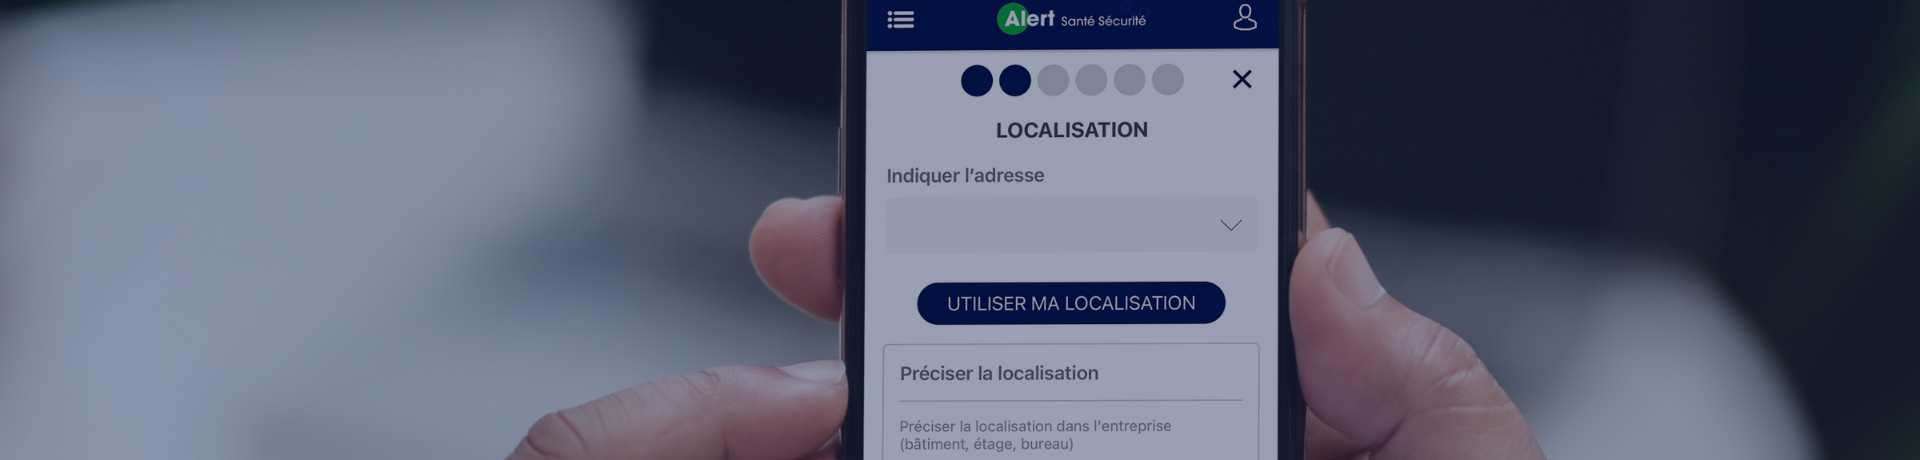 Visuel de l'écran de l'application mobile Alert Santé Sécurité